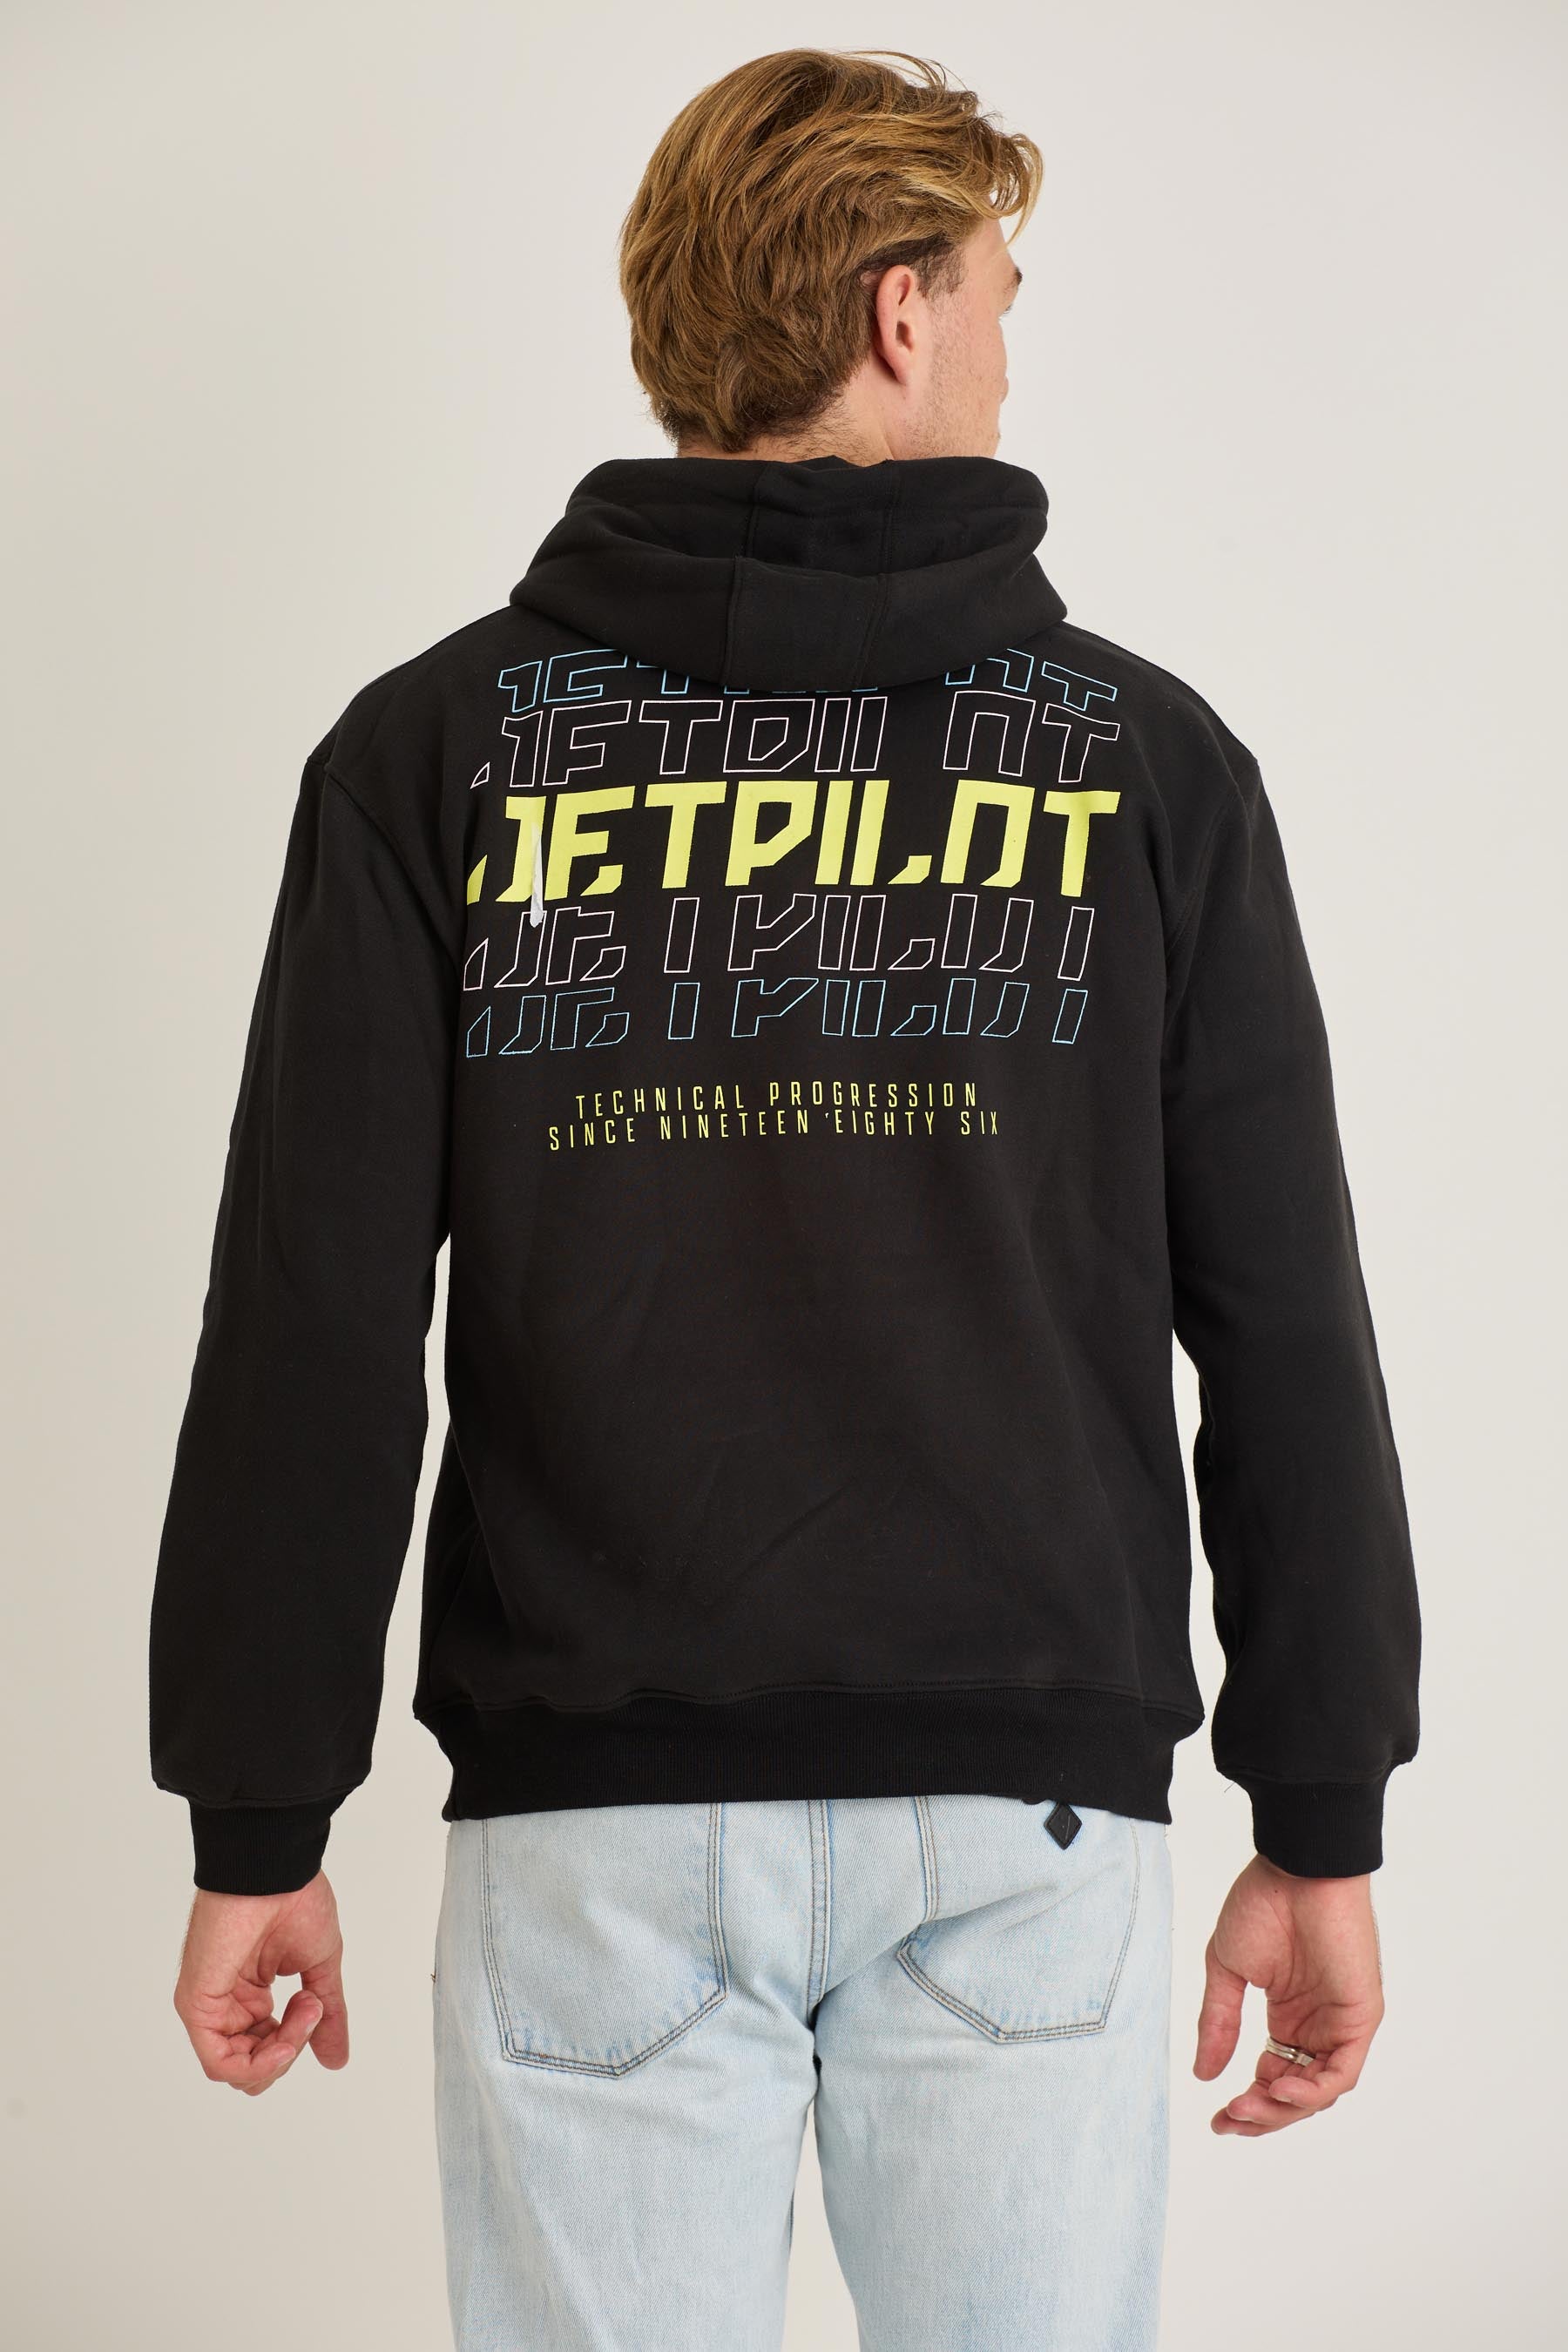 Jetpilot Devolve Mens Pullover - Black 6